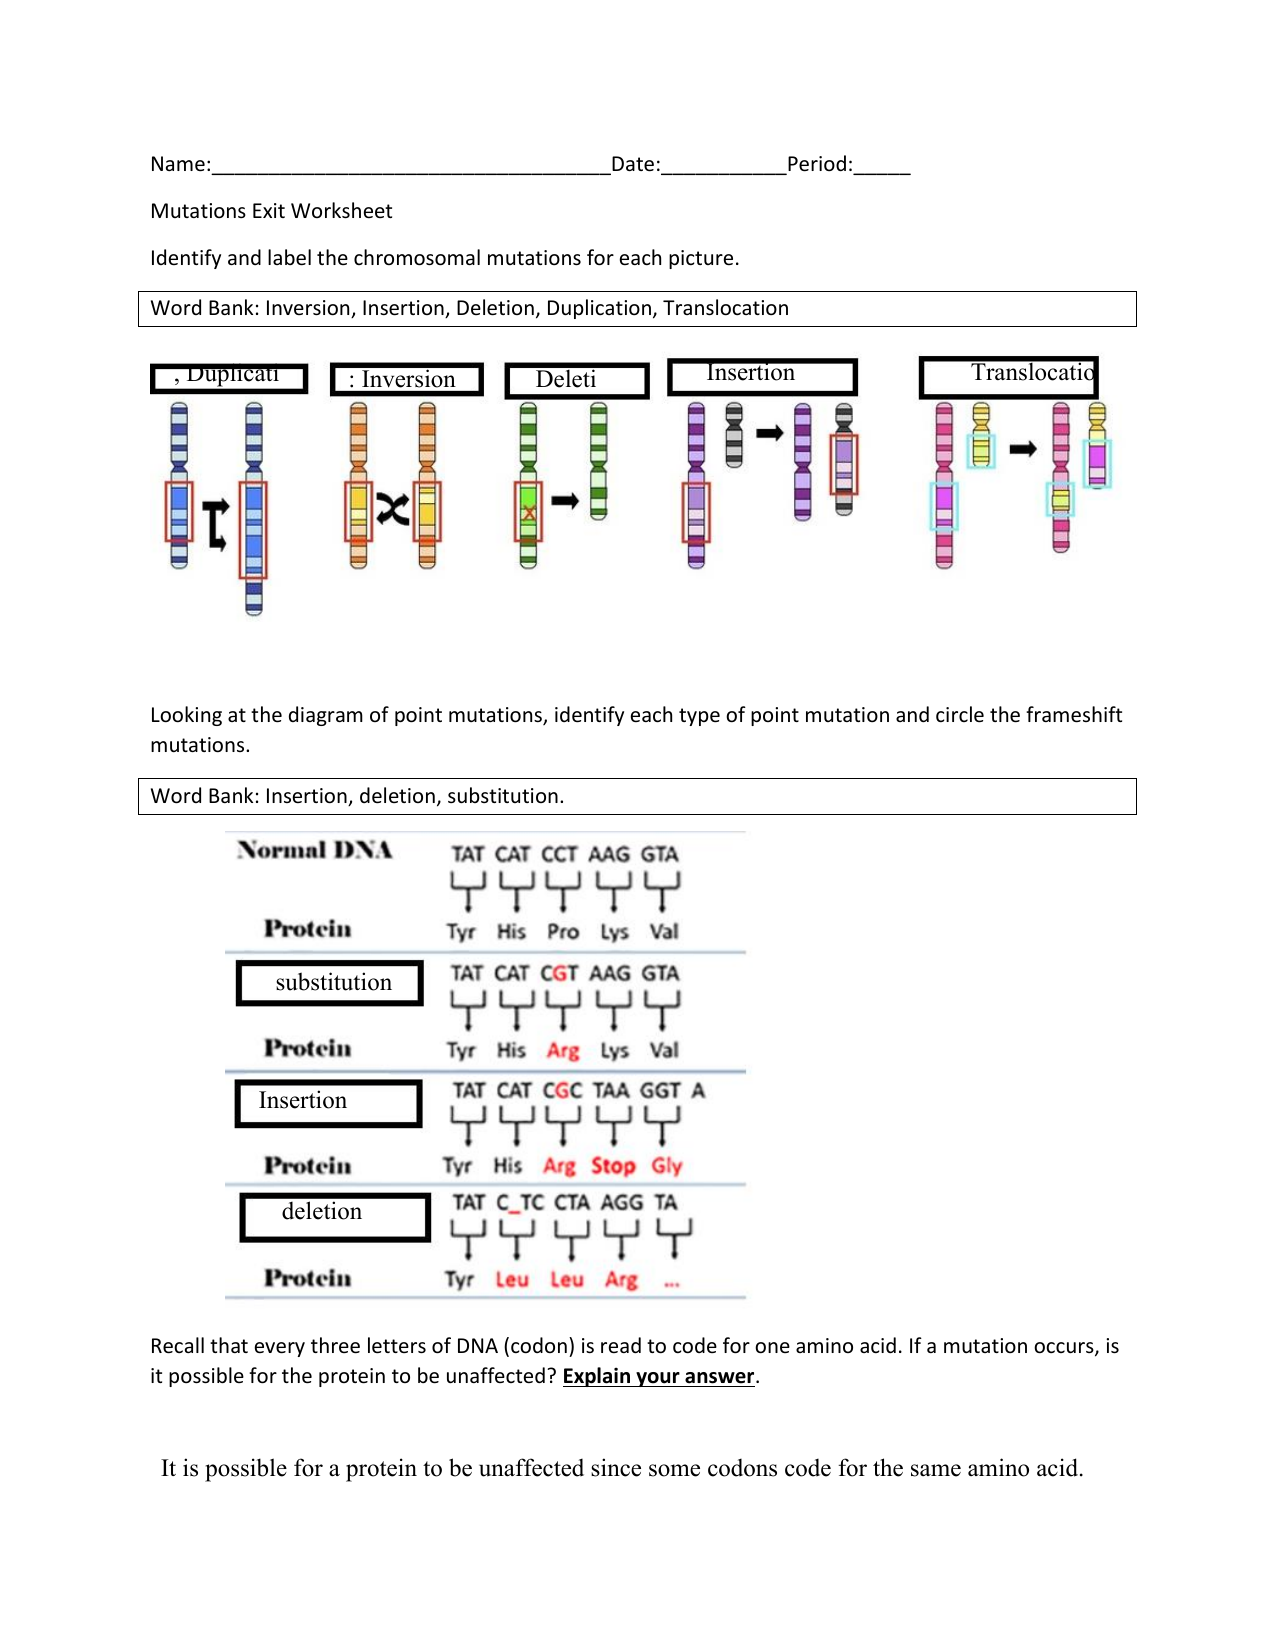 Mutations-Exit-Worksheet (20) Throughout Gene And Chromosome Mutation Worksheet